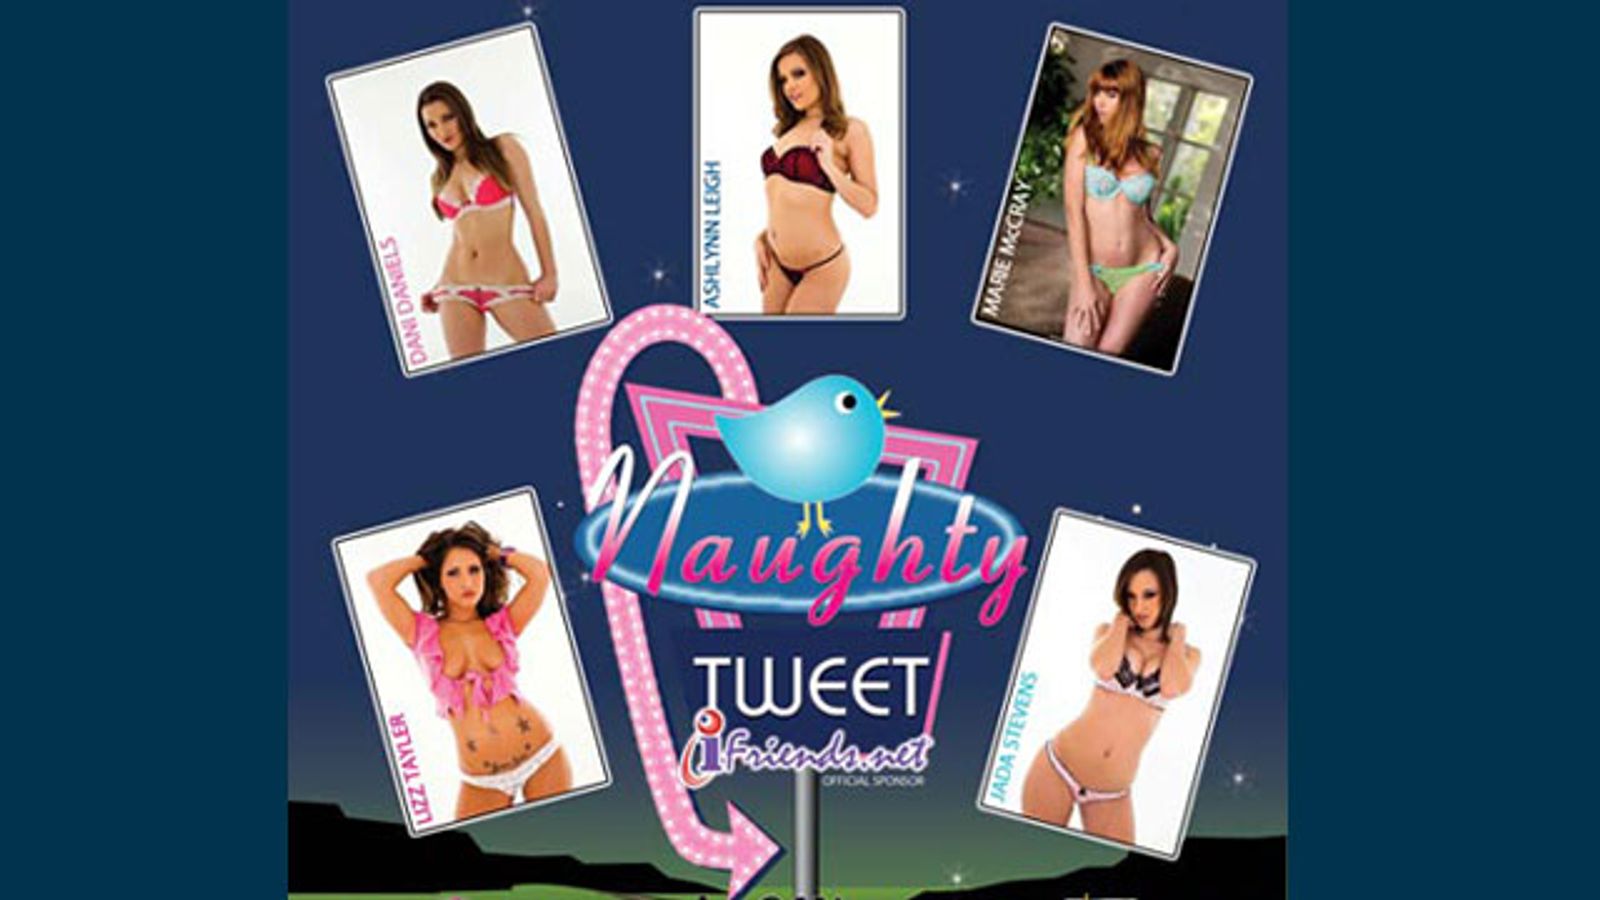 Naughty Tweet Network Take-Over Plan for Exxxotica Miami